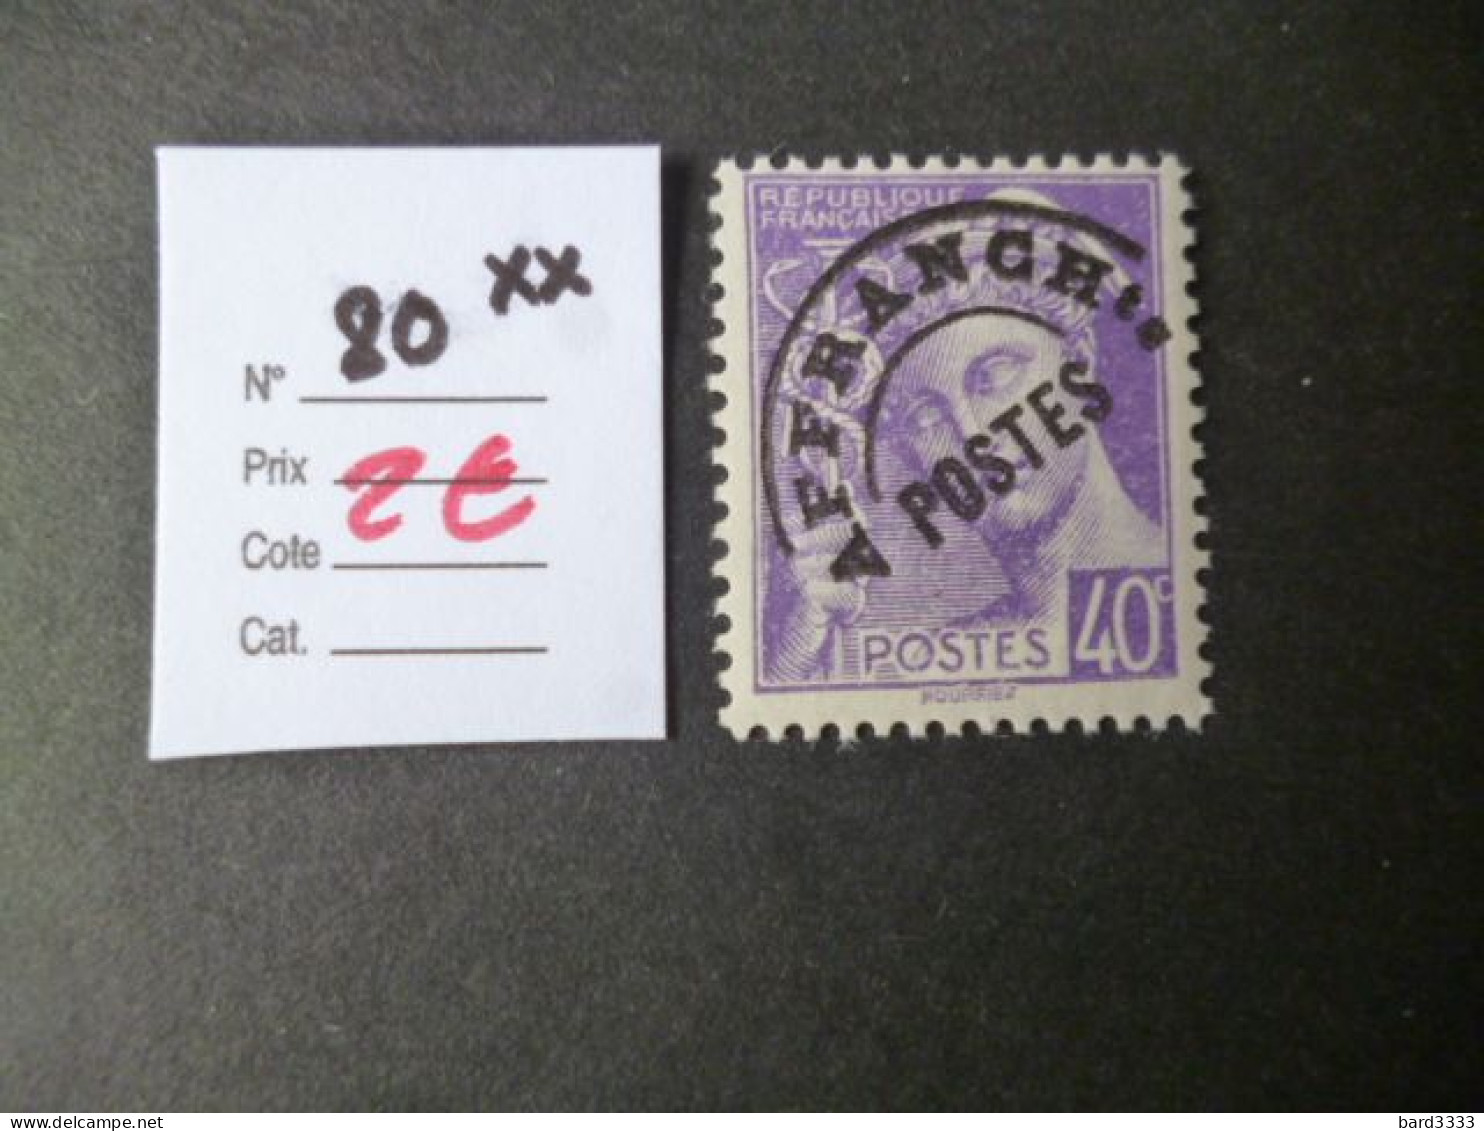 Timbre France Neuf ** Préoblitéré N° 80 Cote 2 € - 1893-1947